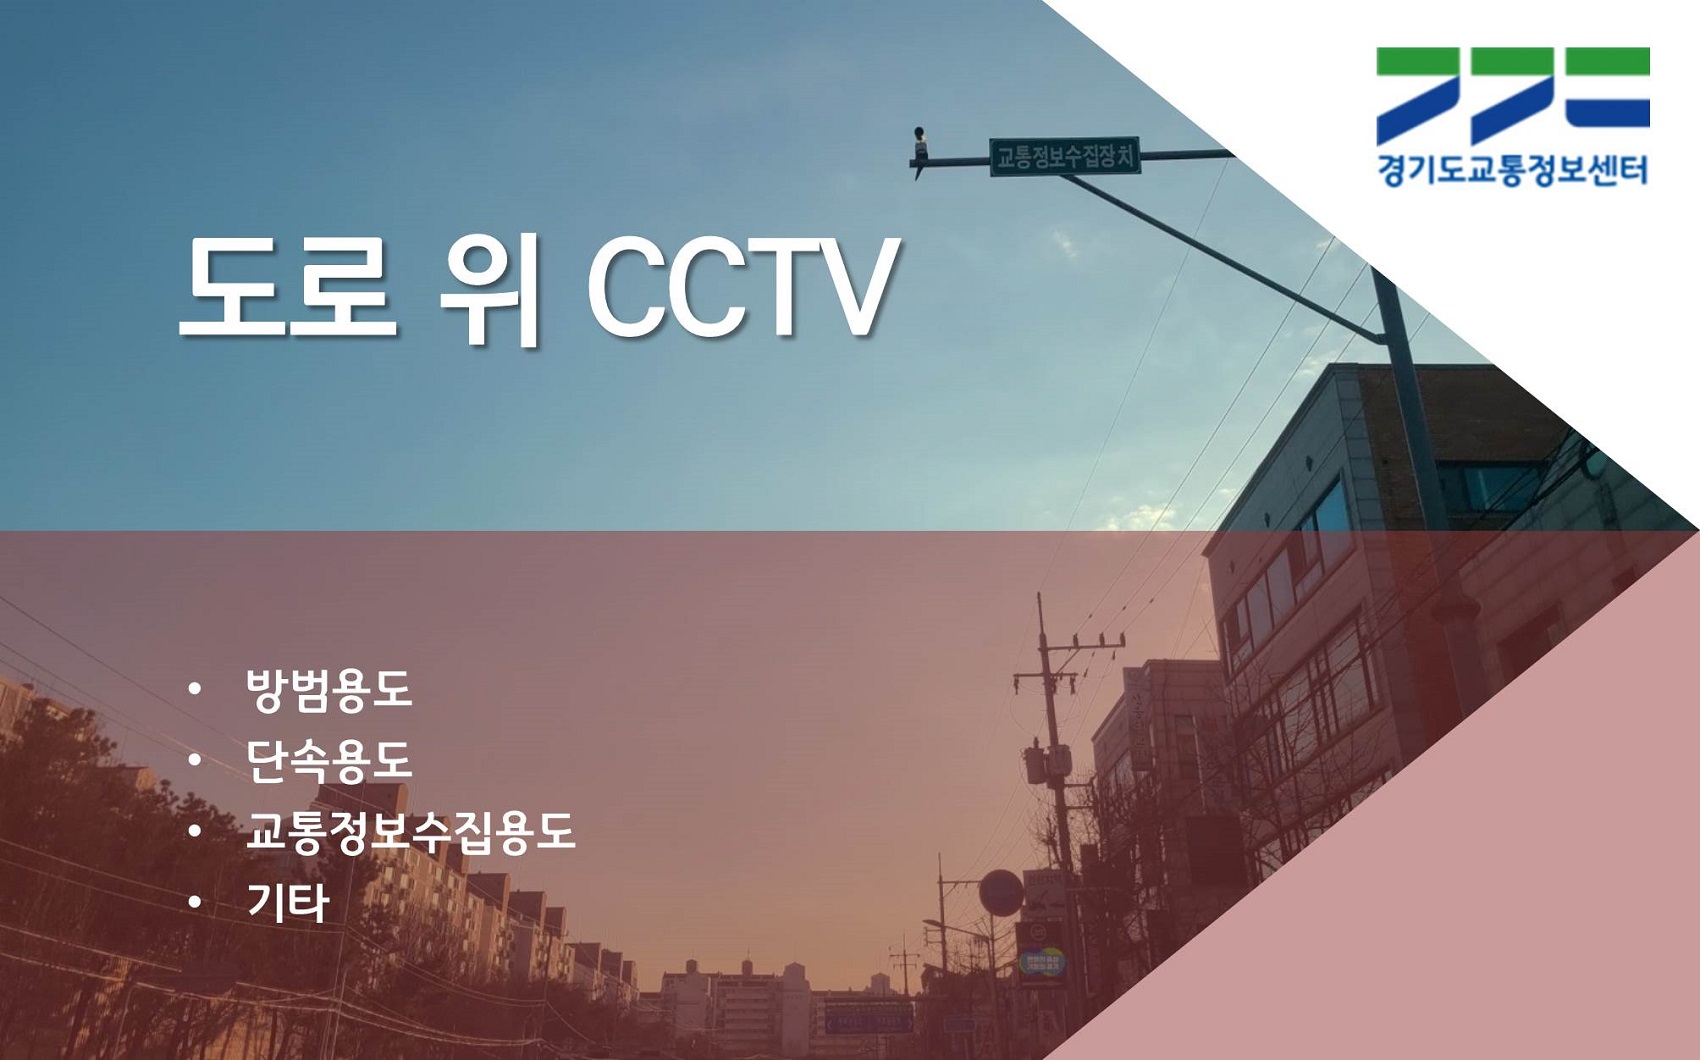 [카드뉴스] 도로 위 CCTV : 방범용도, 단속용도, 교통정보수집용도, 기타